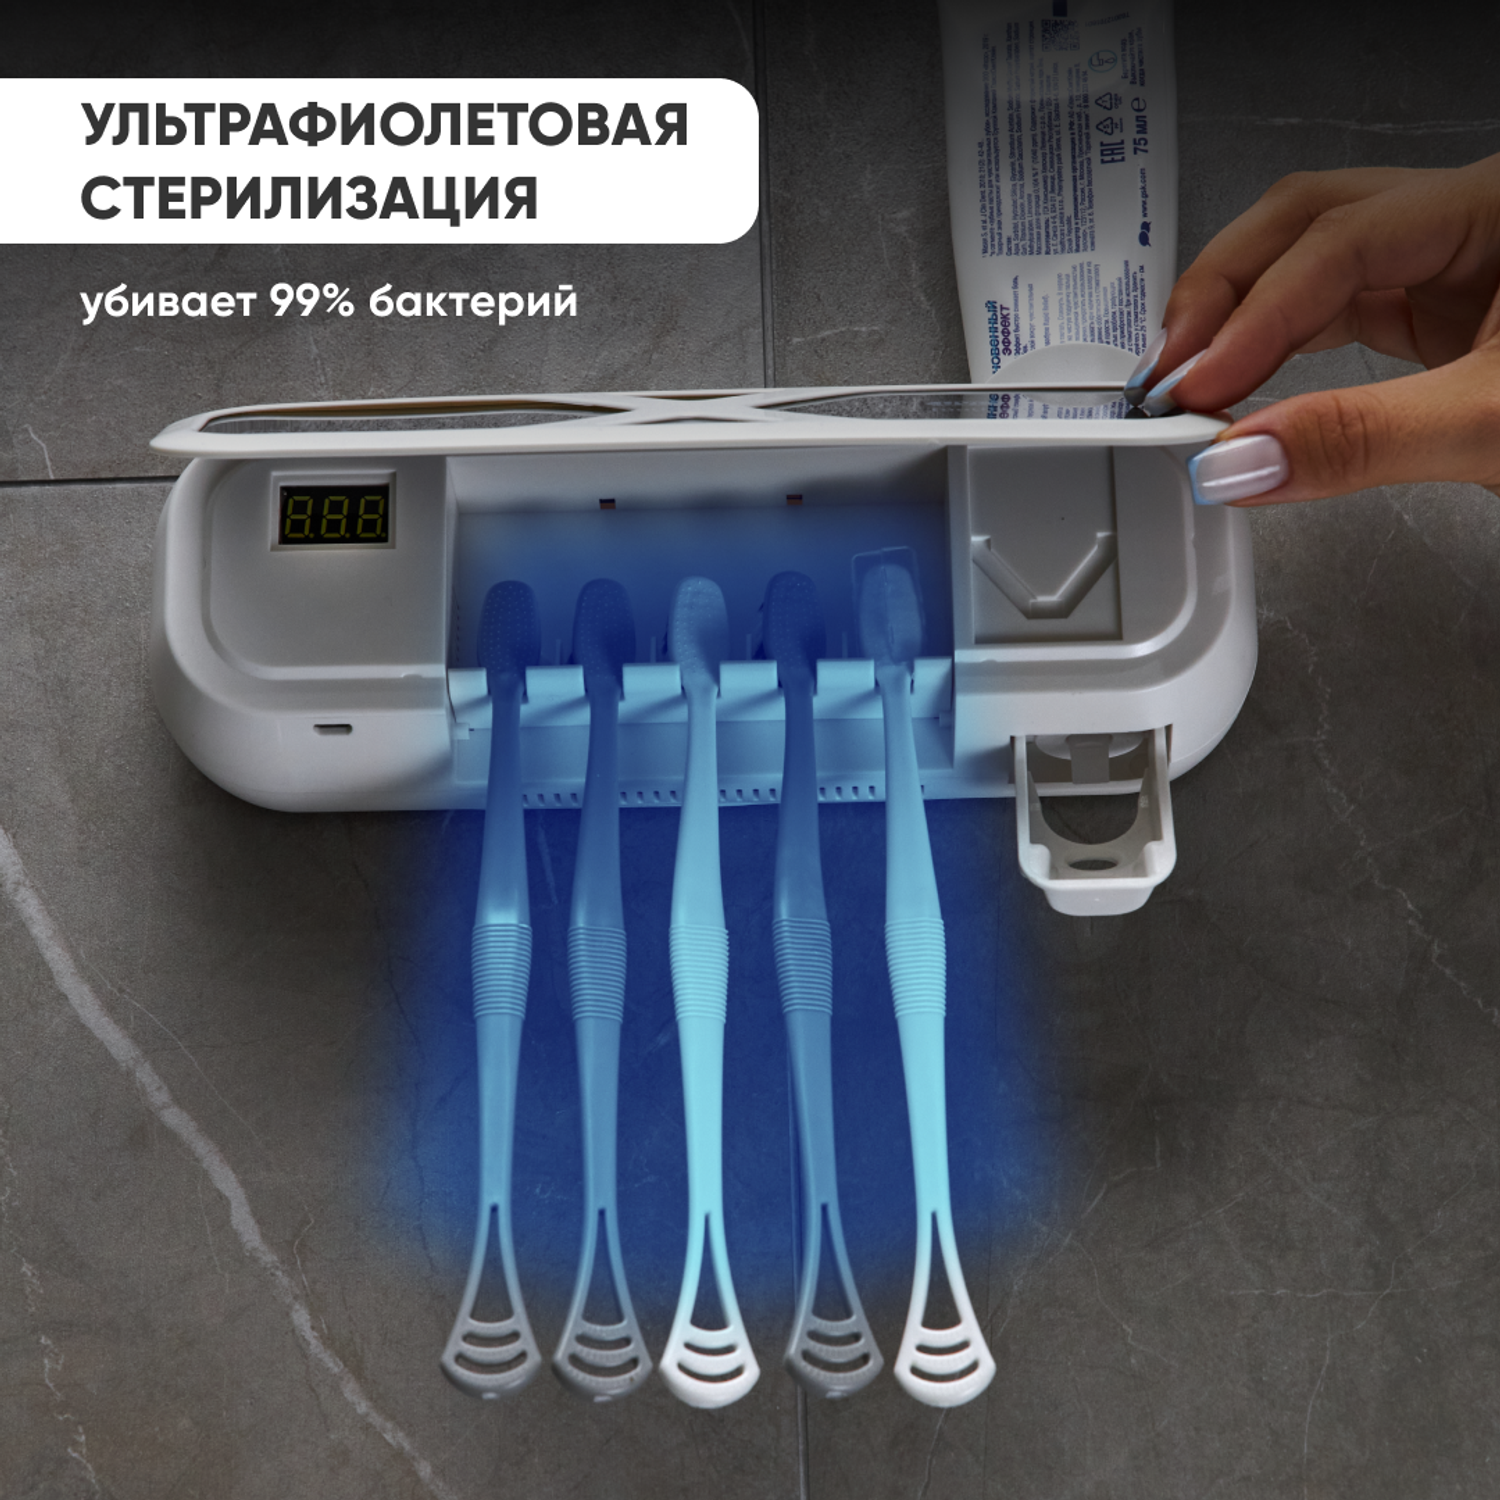 УФ стерилизатор oqqi для зубных щеток с дозатором - фото 4